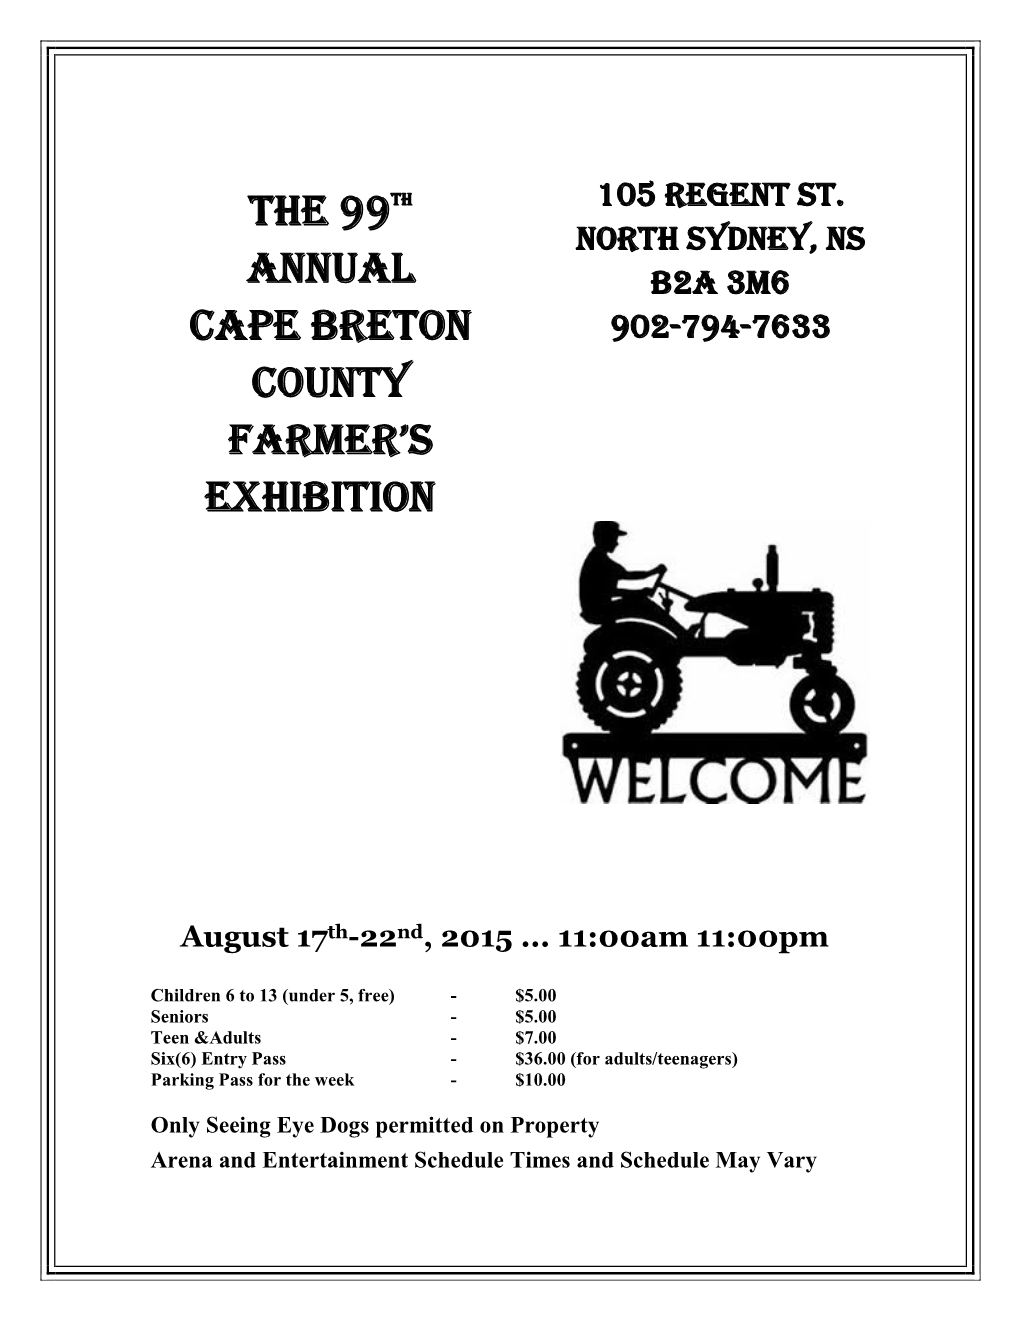 The 99Th Annual Cape Breton County Farmer's Exhibition